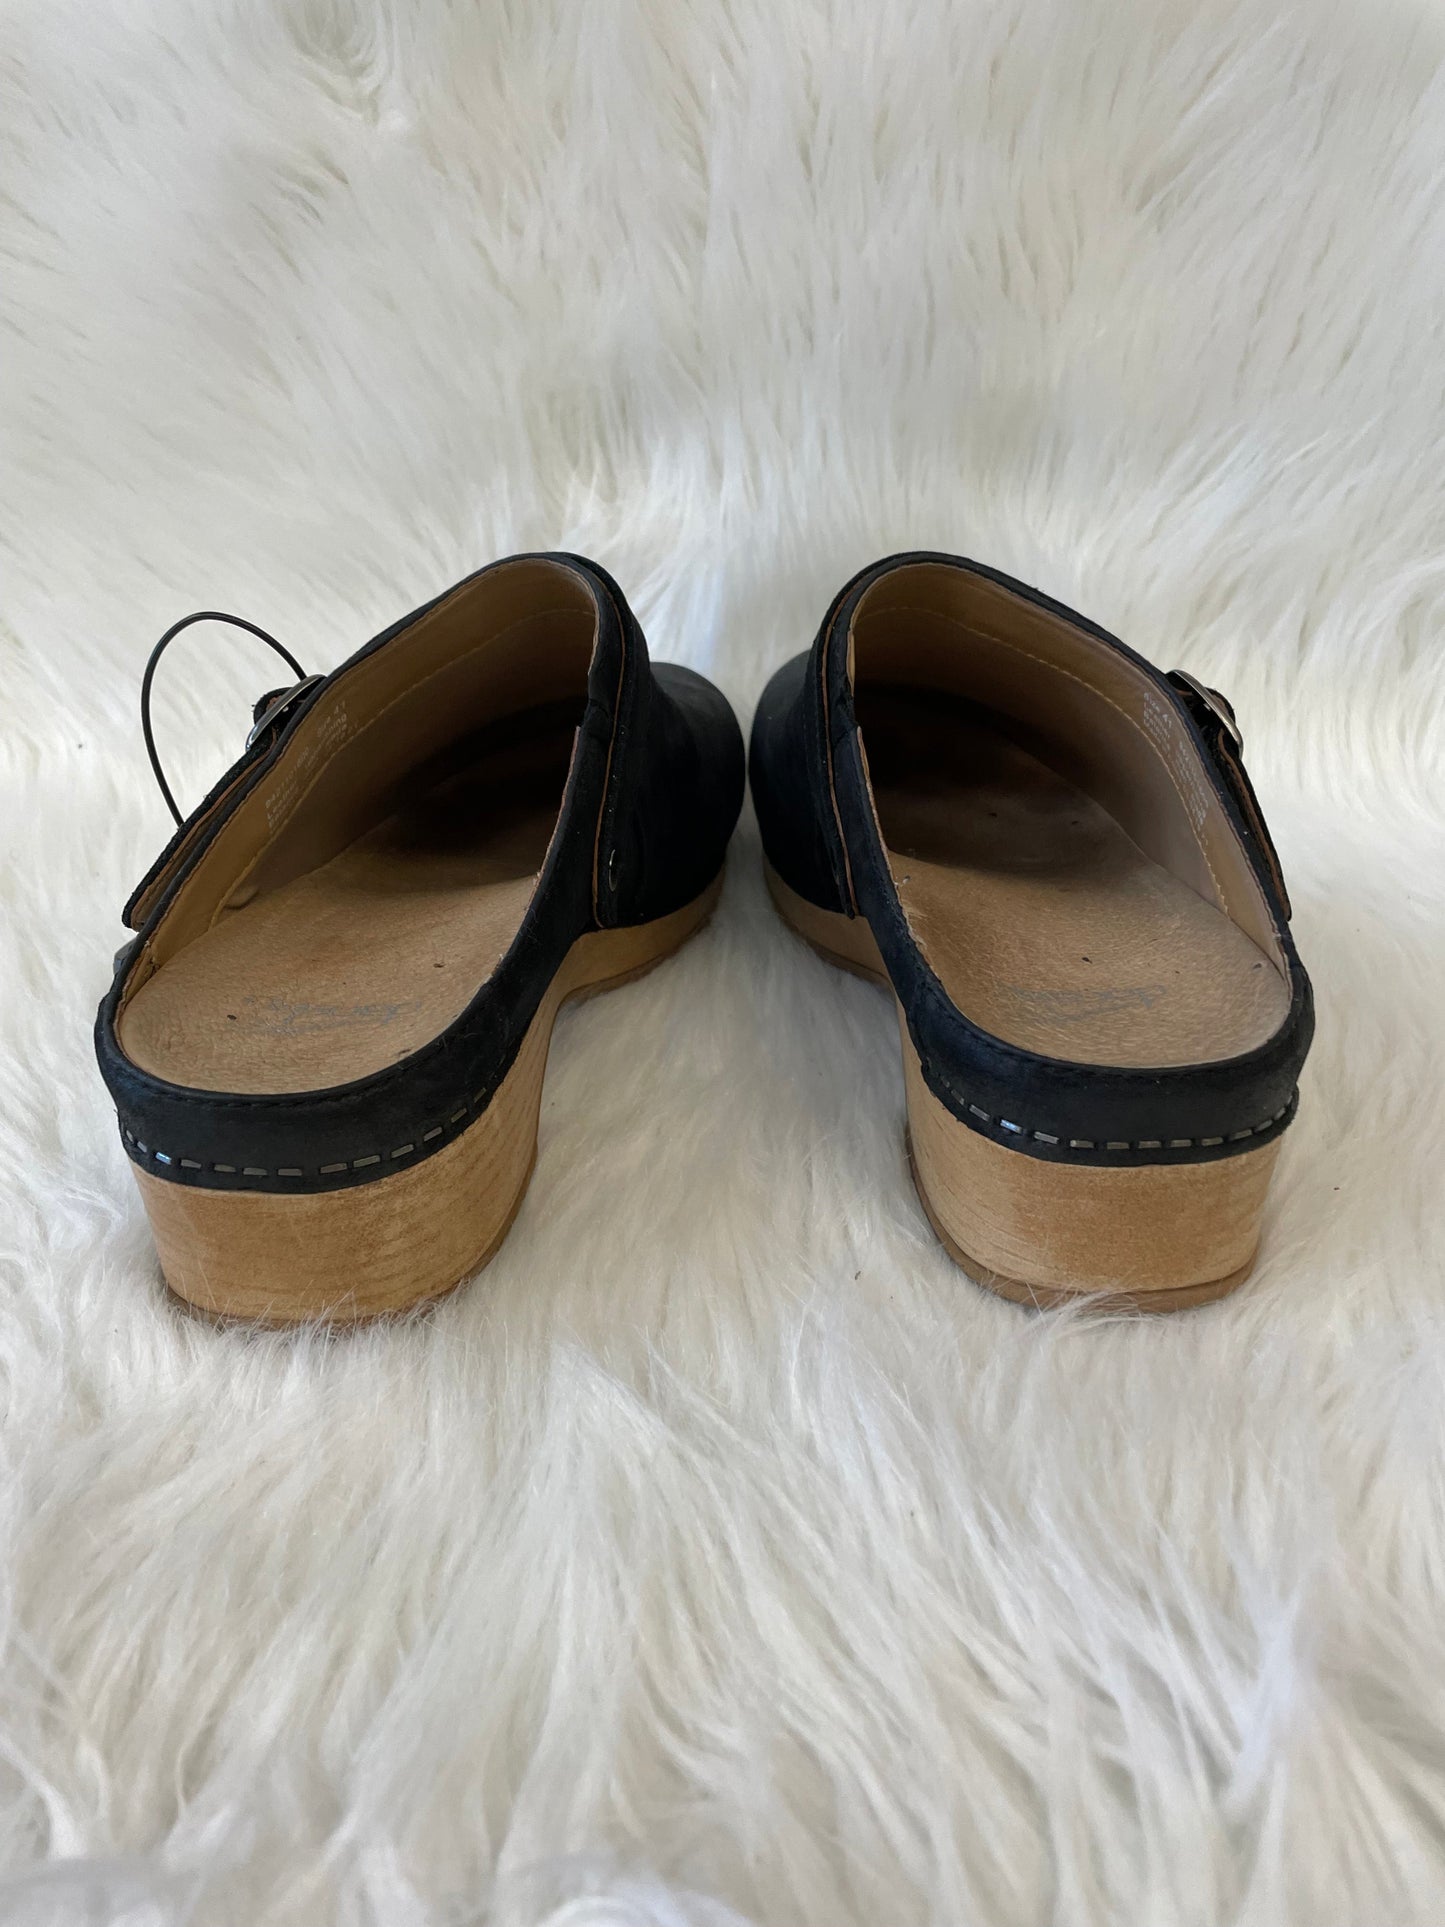 Shoes Heels Block By Dansko  Size: 9.5